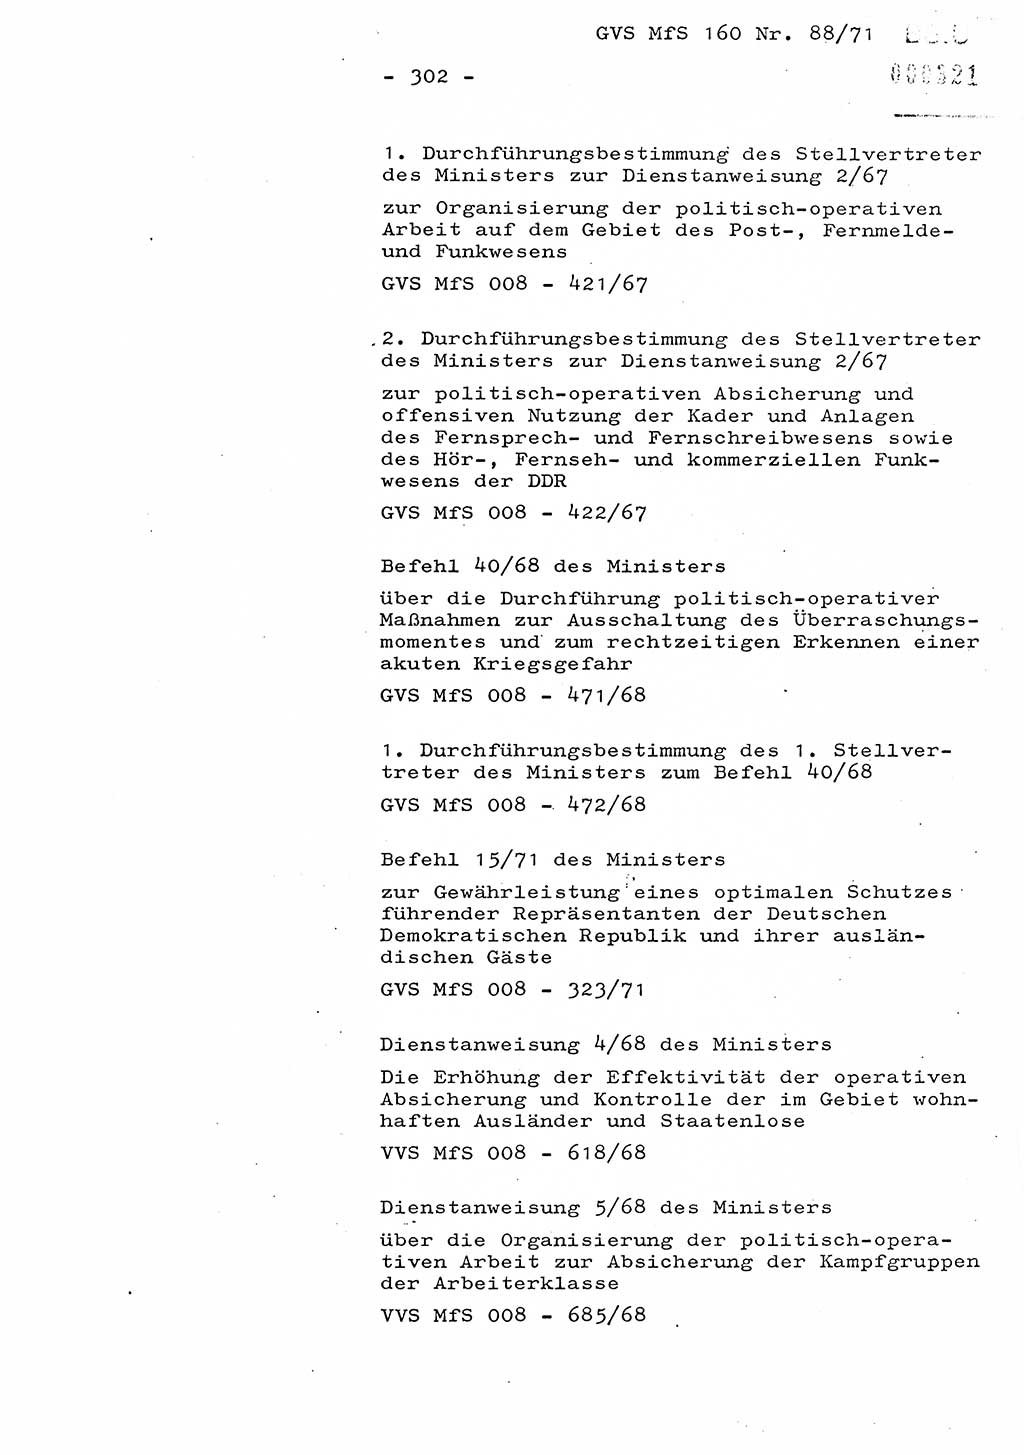 Dissertation Oberstleutnant Josef Schwarz (BV Schwerin), Major Fritz Amm (JHS), Hauptmann Peter Gräßler (JHS), Ministerium für Staatssicherheit (MfS) [Deutsche Demokratische Republik (DDR)], Juristische Hochschule (JHS), Geheime Verschlußsache (GVS) 160-88/71, Potsdam 1972, Seite 302 (Diss. MfS DDR JHS GVS 160-88/71 1972, S. 302)